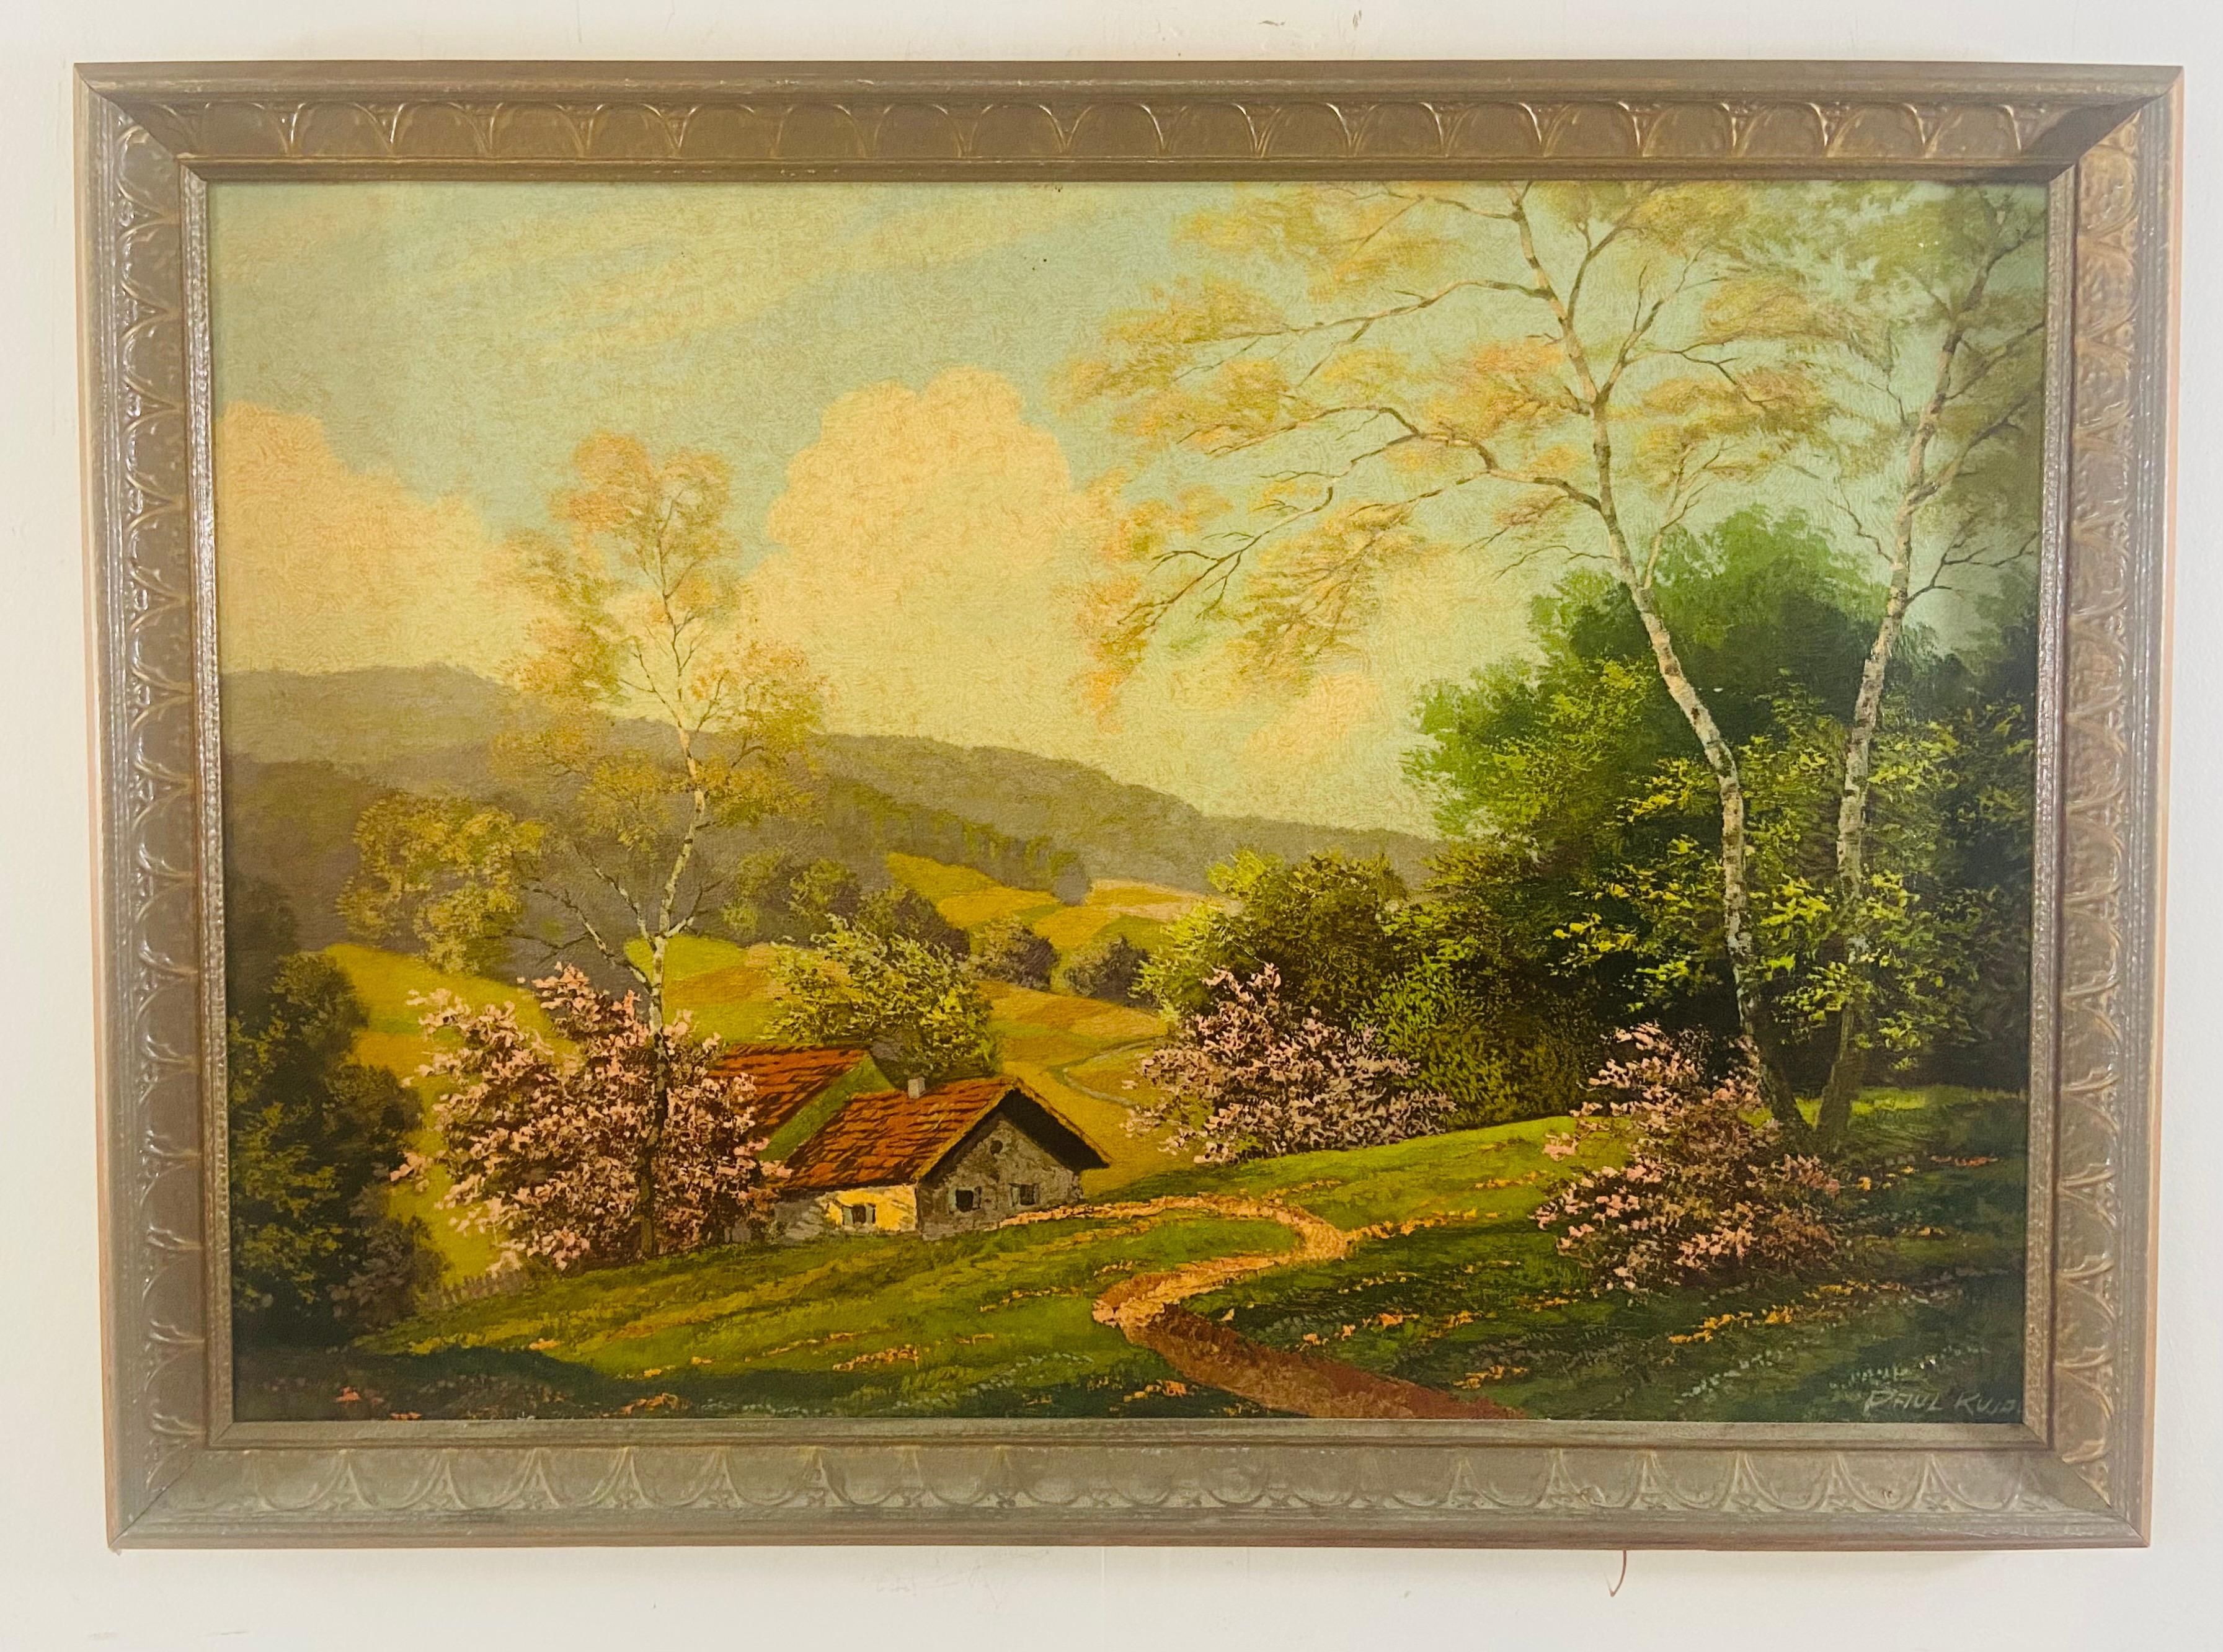 Un paysage peint à l'huile sur panneau par l'artiste Paul Kujal Austria (1894 - 1965). Le tableau représente une scène sereine d'une maison de campagne dans ce qui ressemble à un village européen dans la région montagneuse au printemps. Des arbres